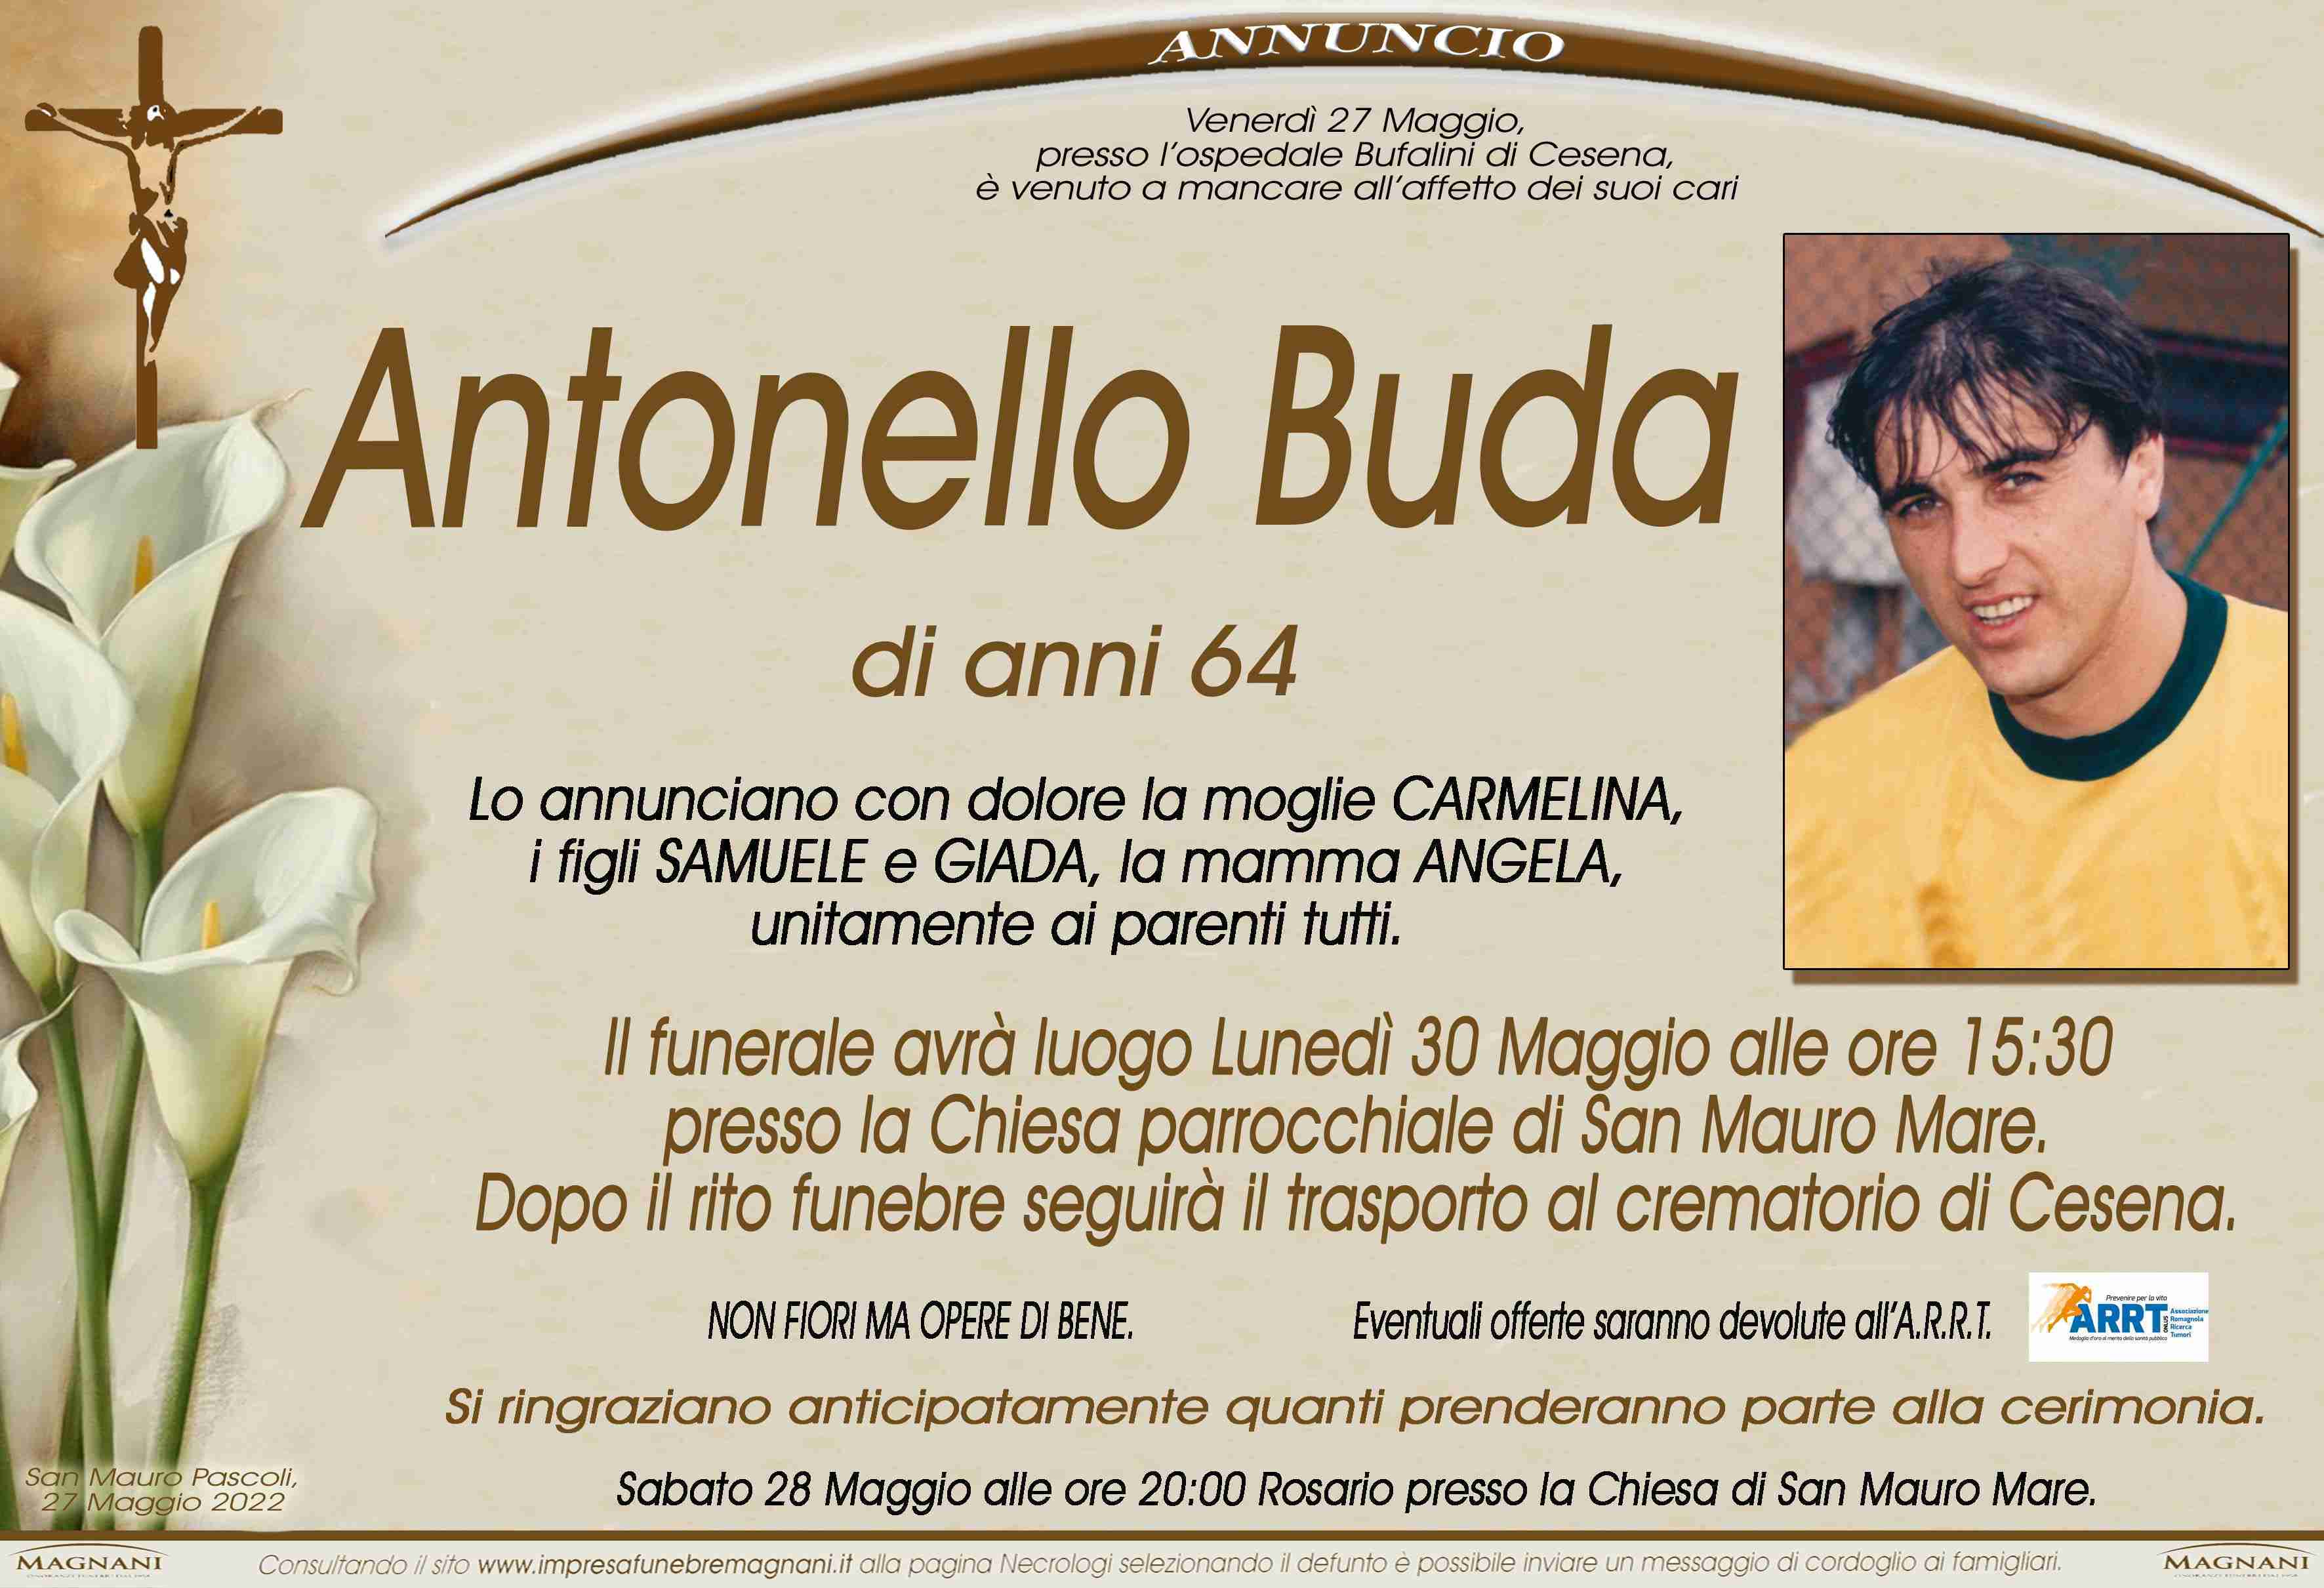 Antonello Buda